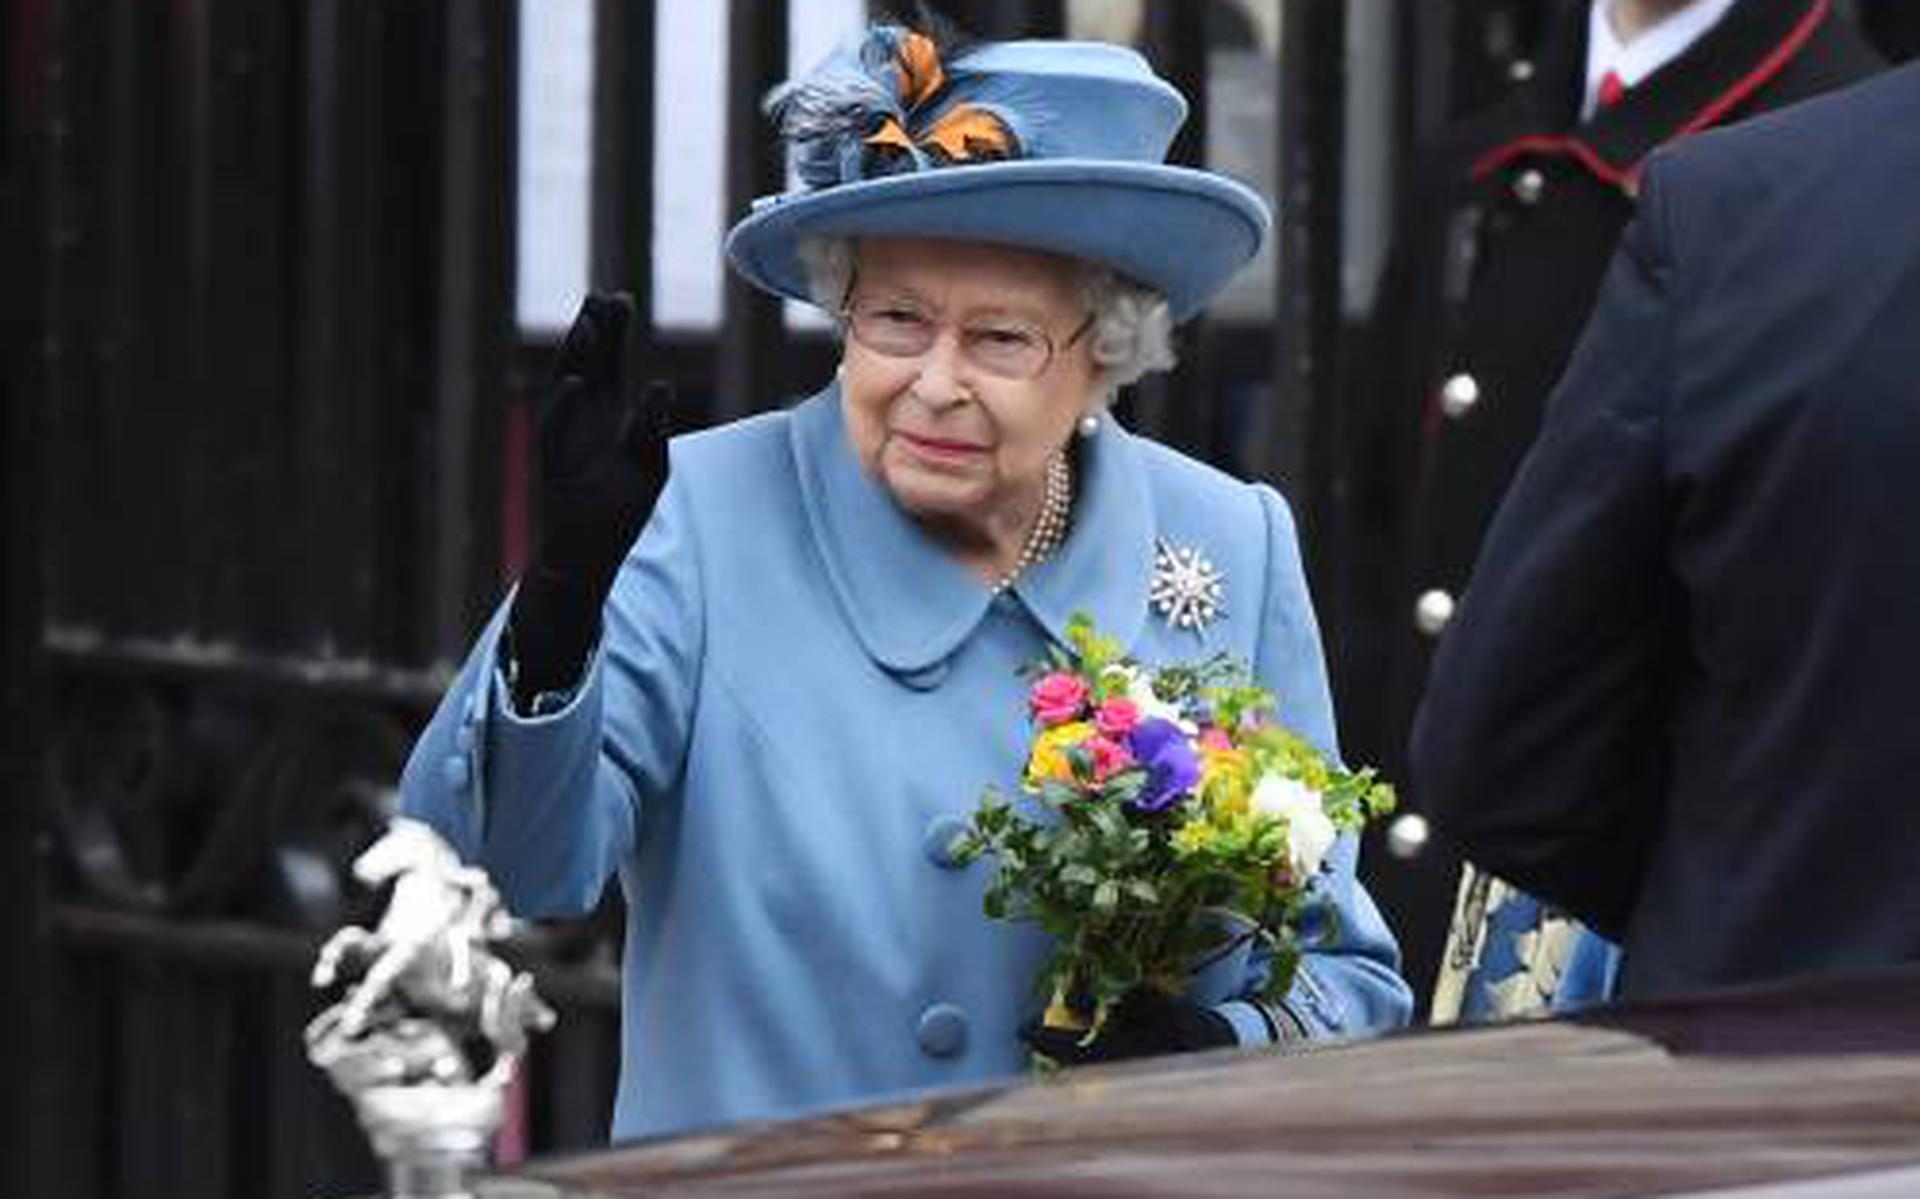 Koningin Elizabeth: coronacrisis toont kracht van deze generatie